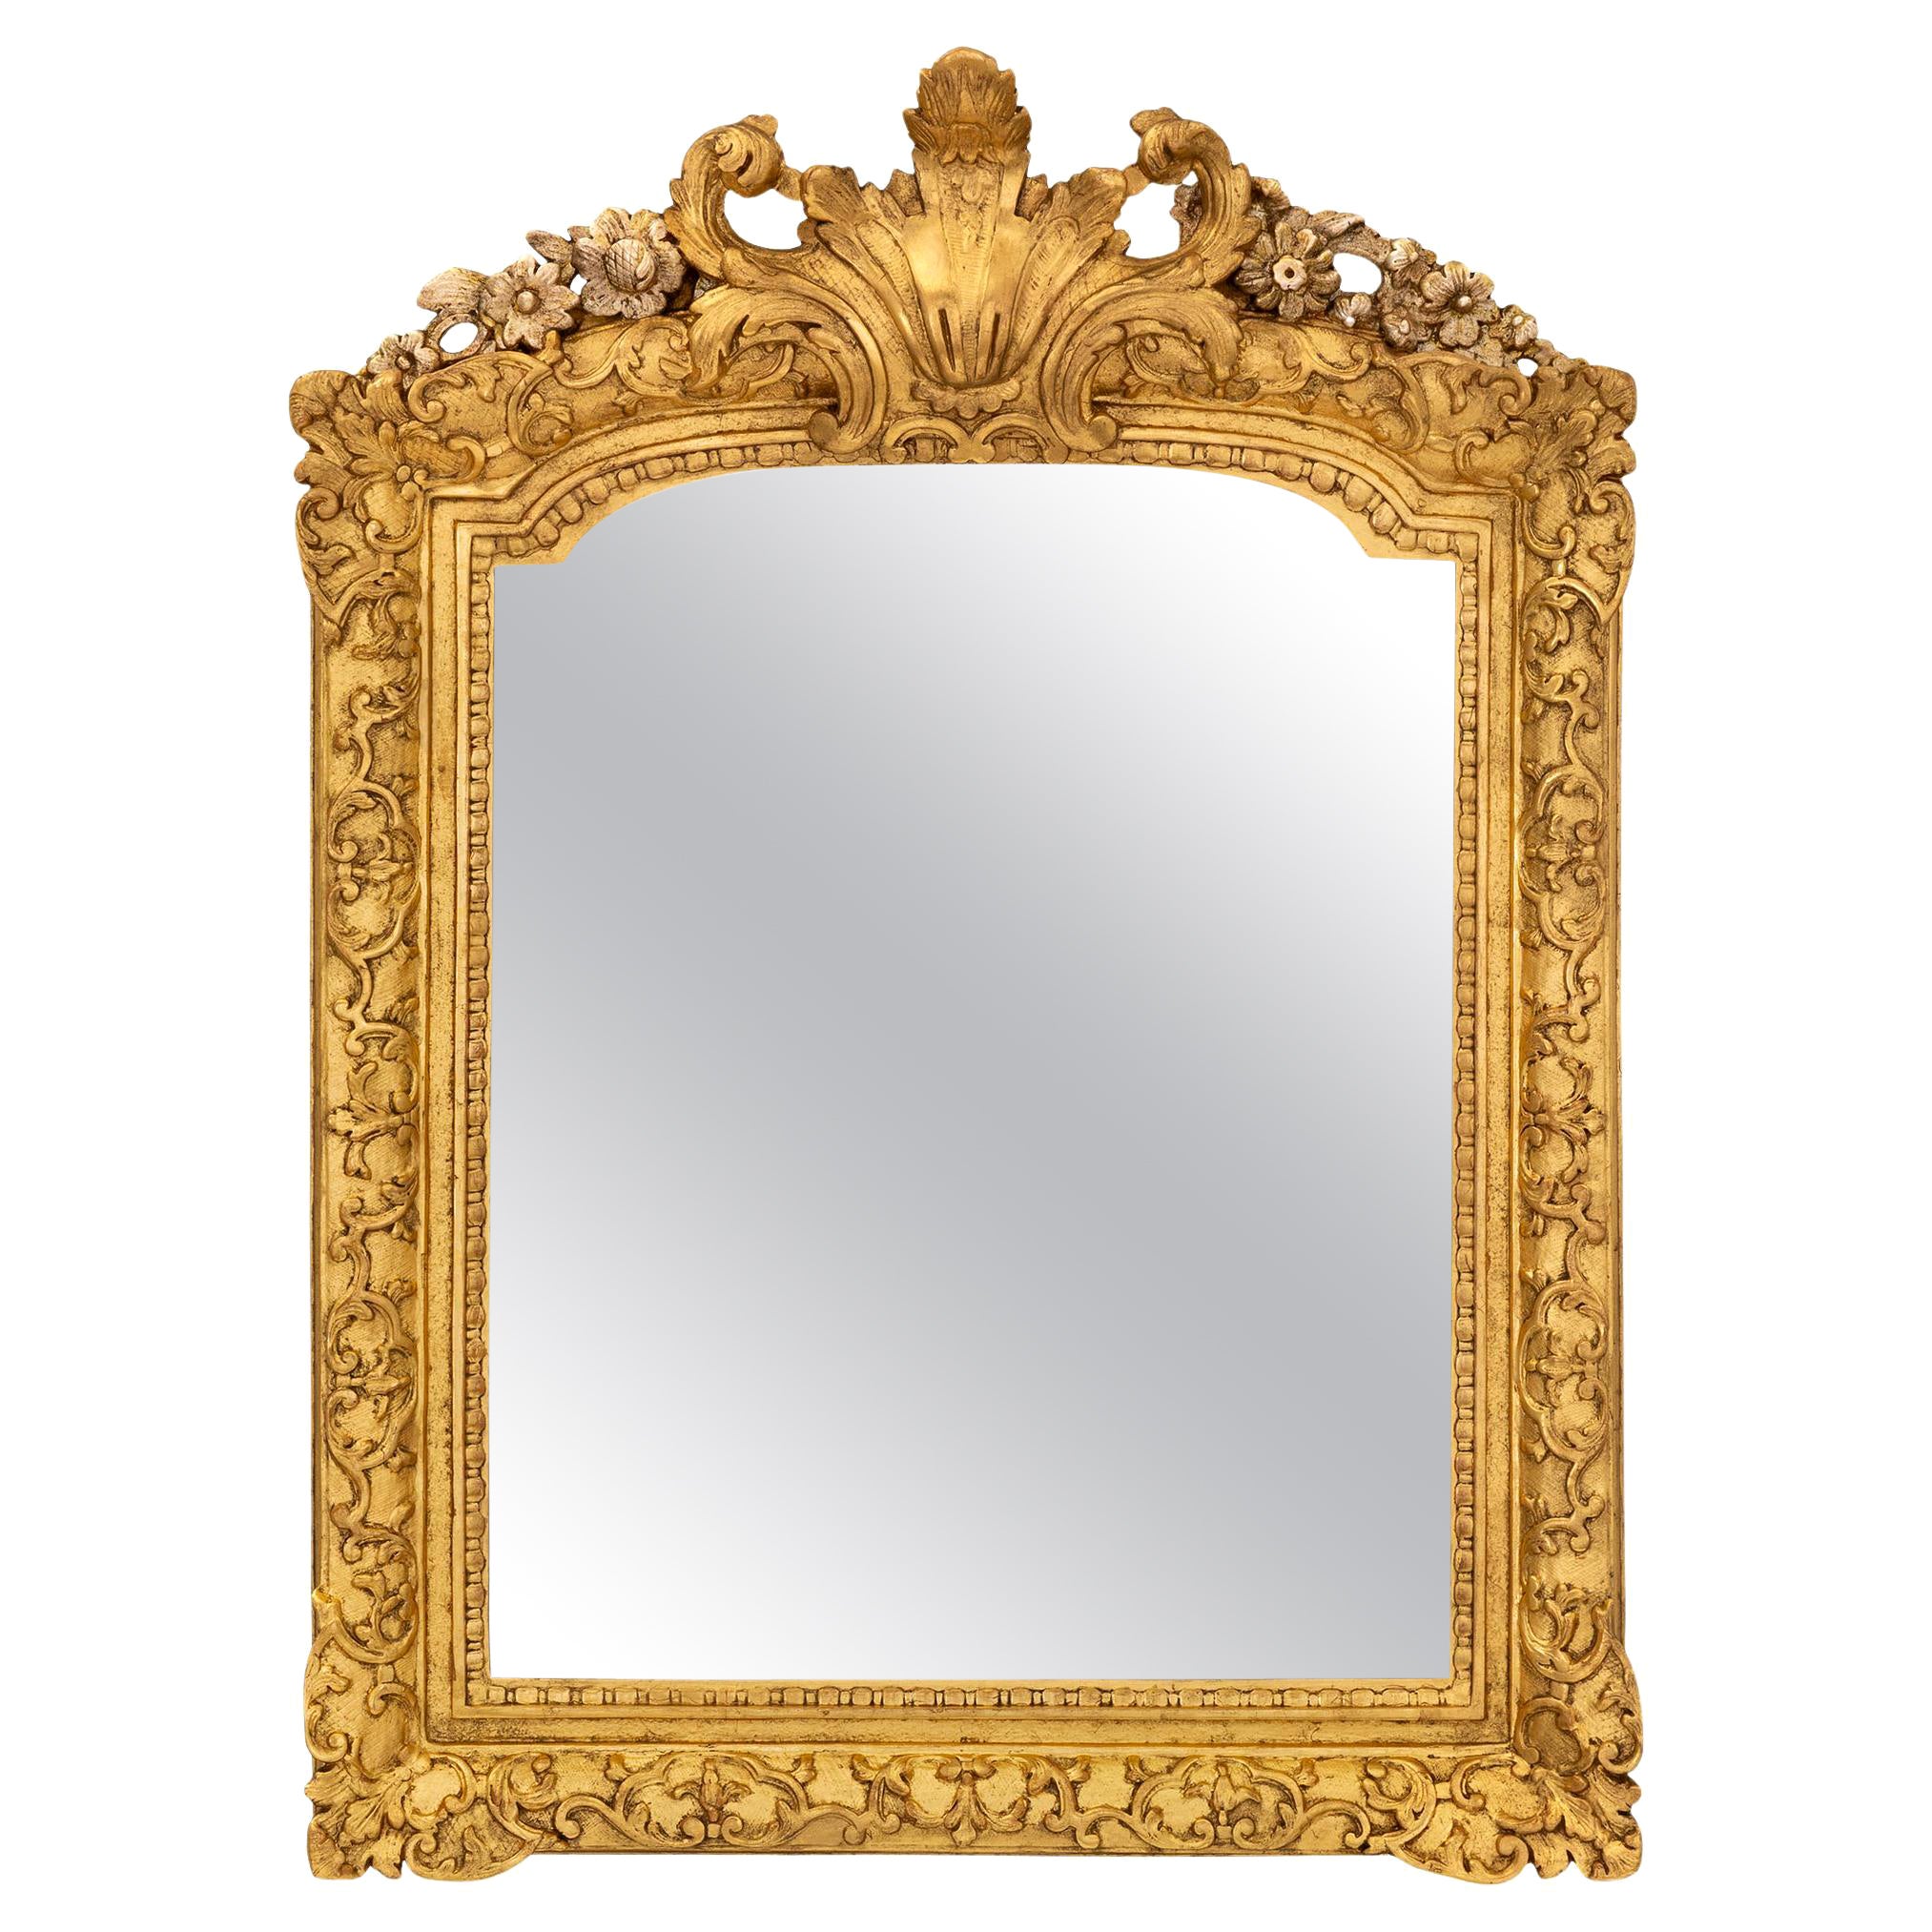 Specchio in legno dorato e mecca francese del periodo Régence dell'inizio del XVIII secolo